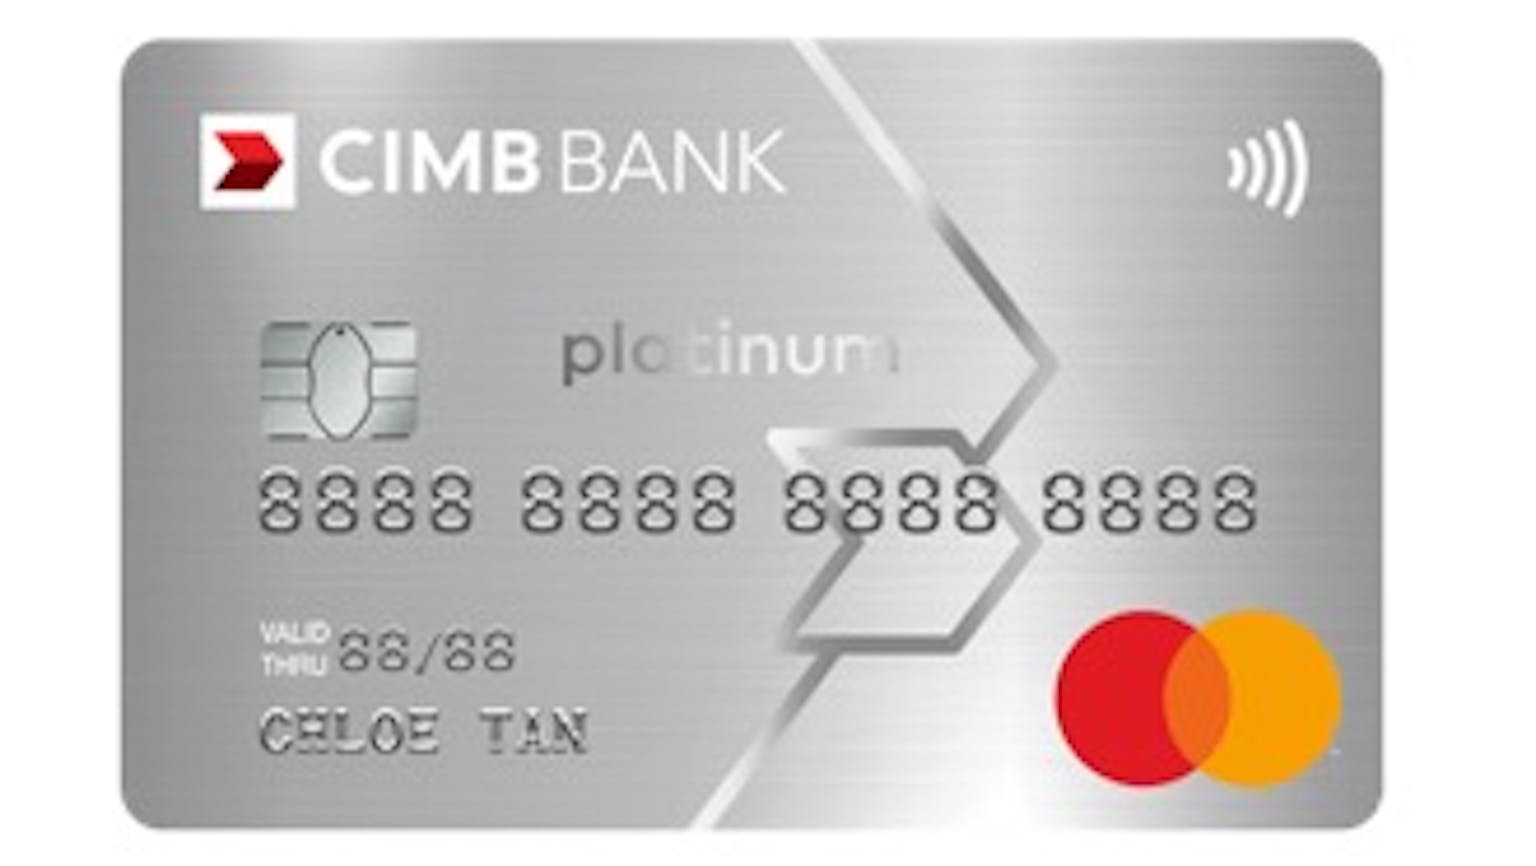 CIMB Platinum Mastercard